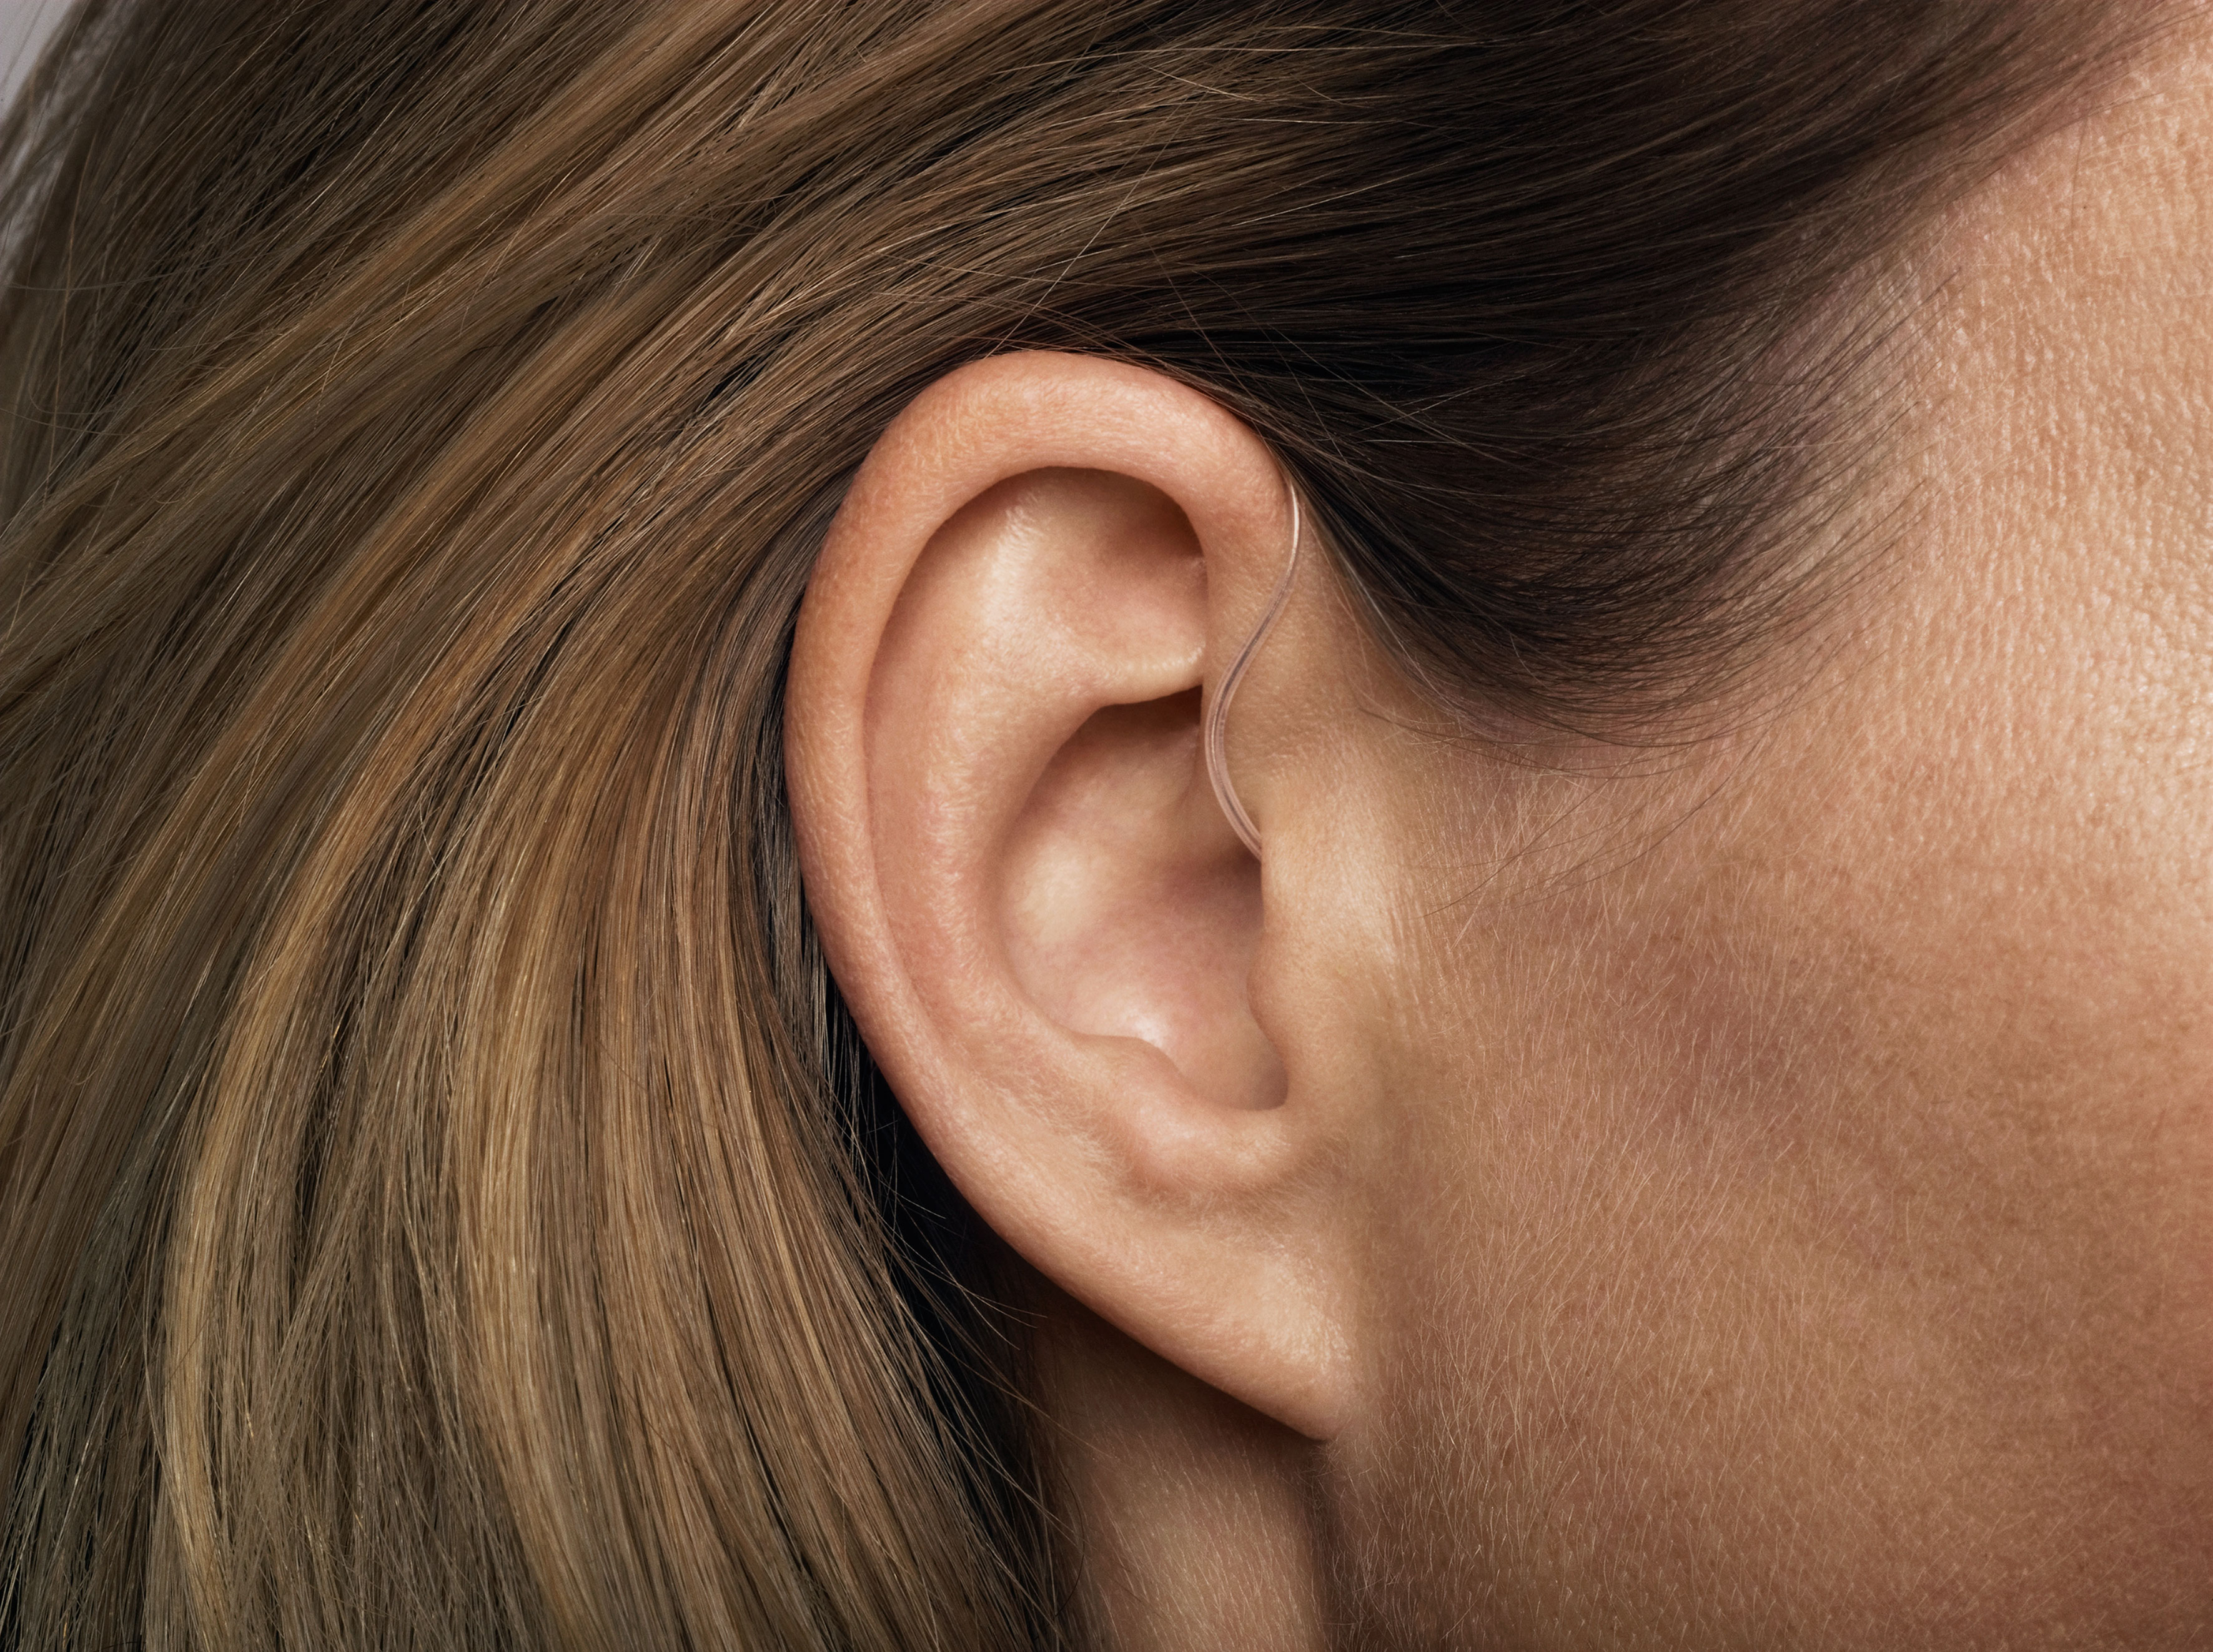 Frauen haben es häufig einfacher das Hörgerät hinter dem Ohr zu "verst...